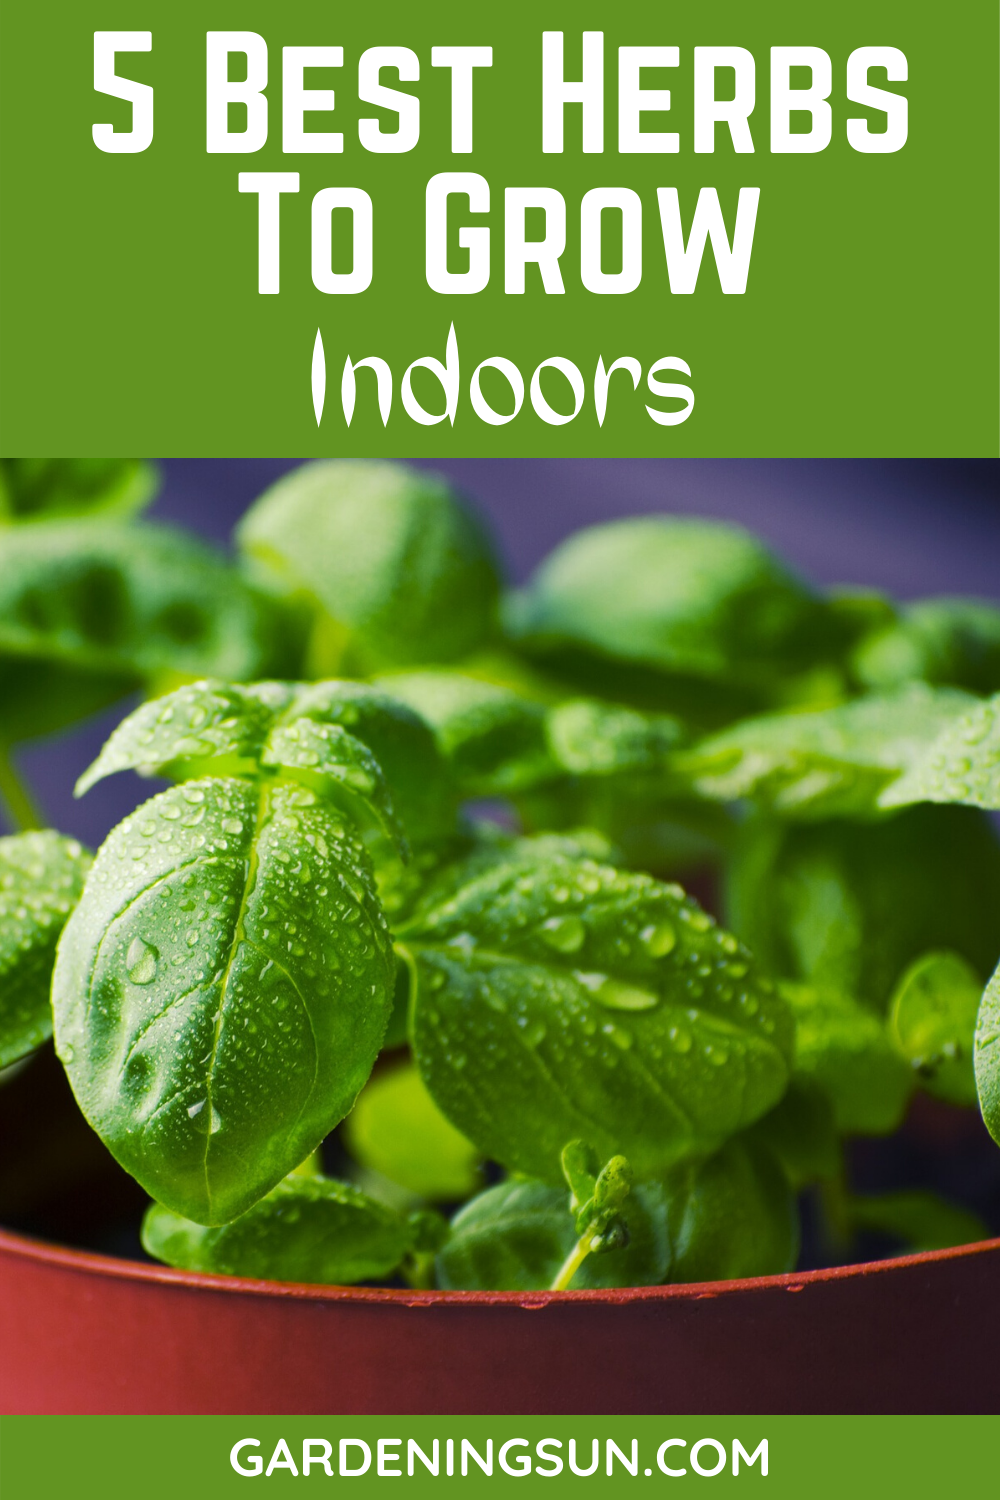 5 Best Herbs To Grow Indoors - Gardening Sun